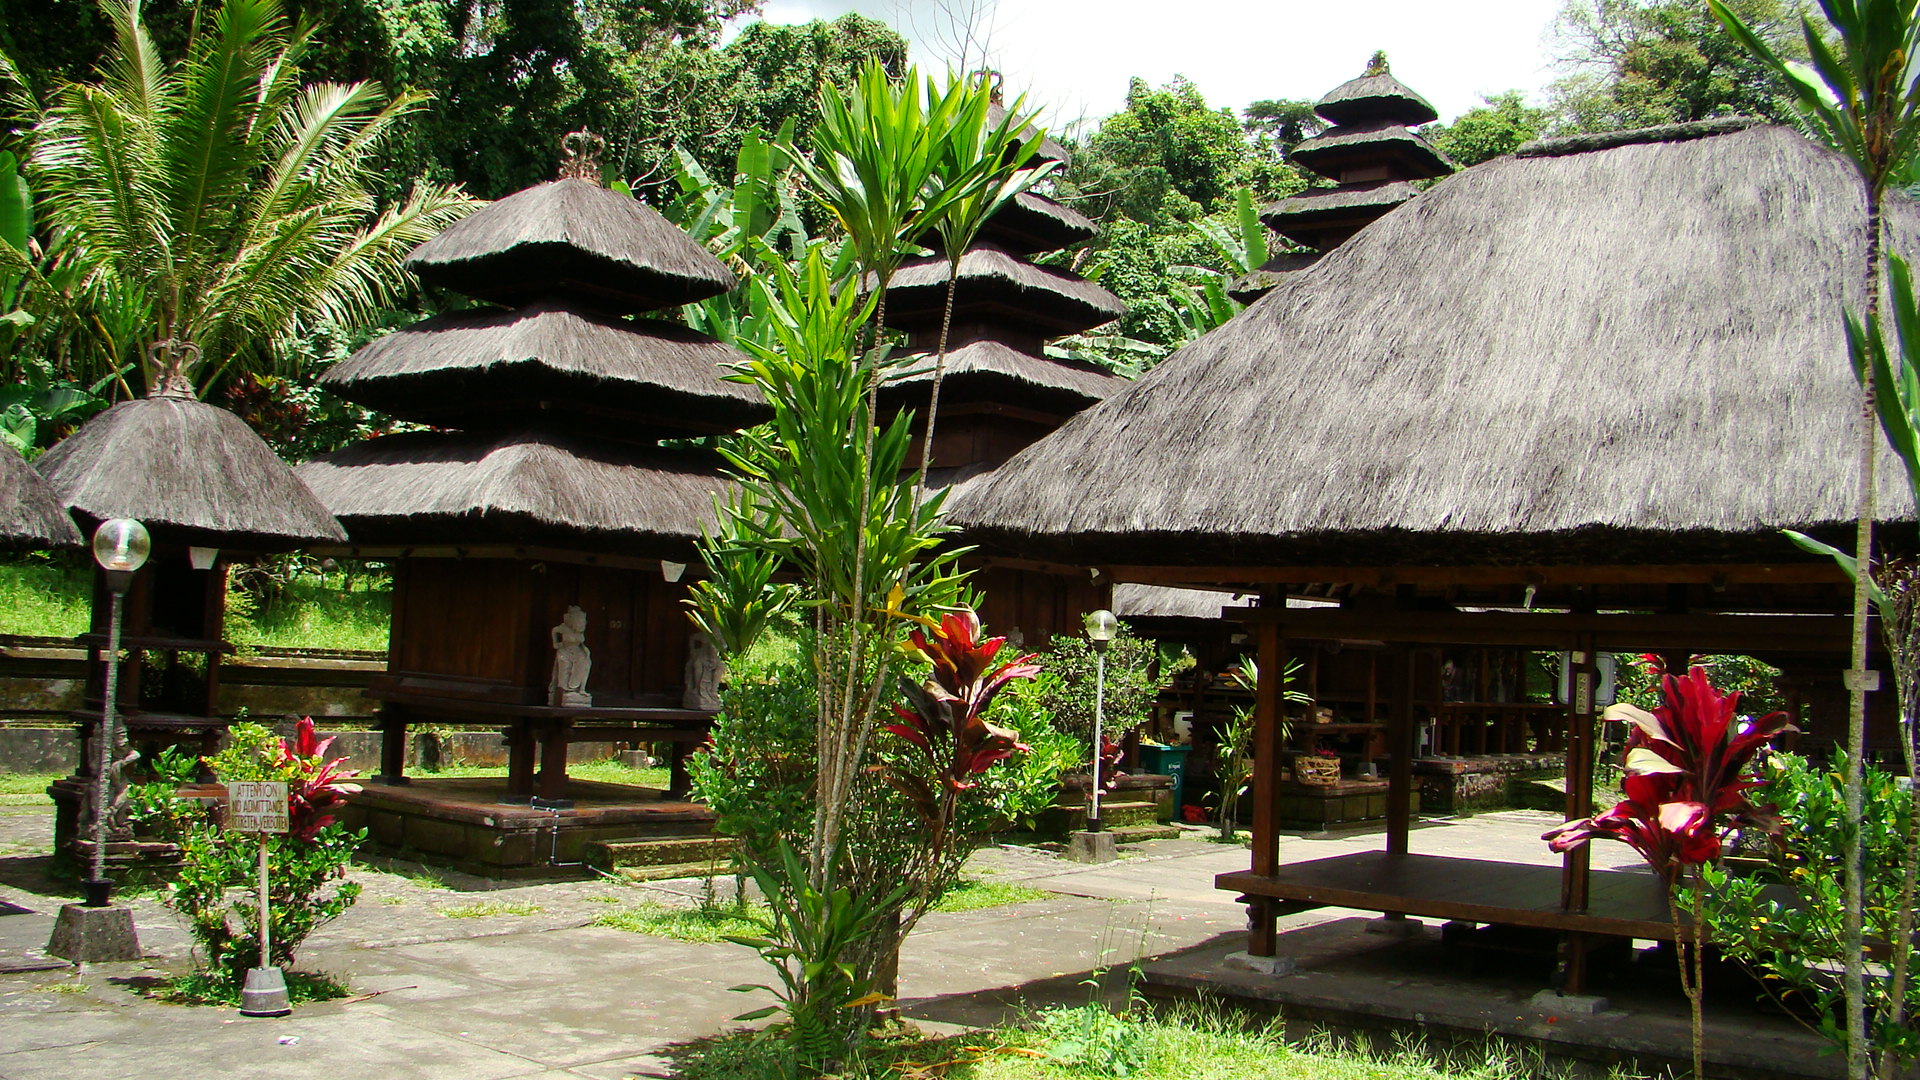 25.02.2010 - Bali 258.jpg